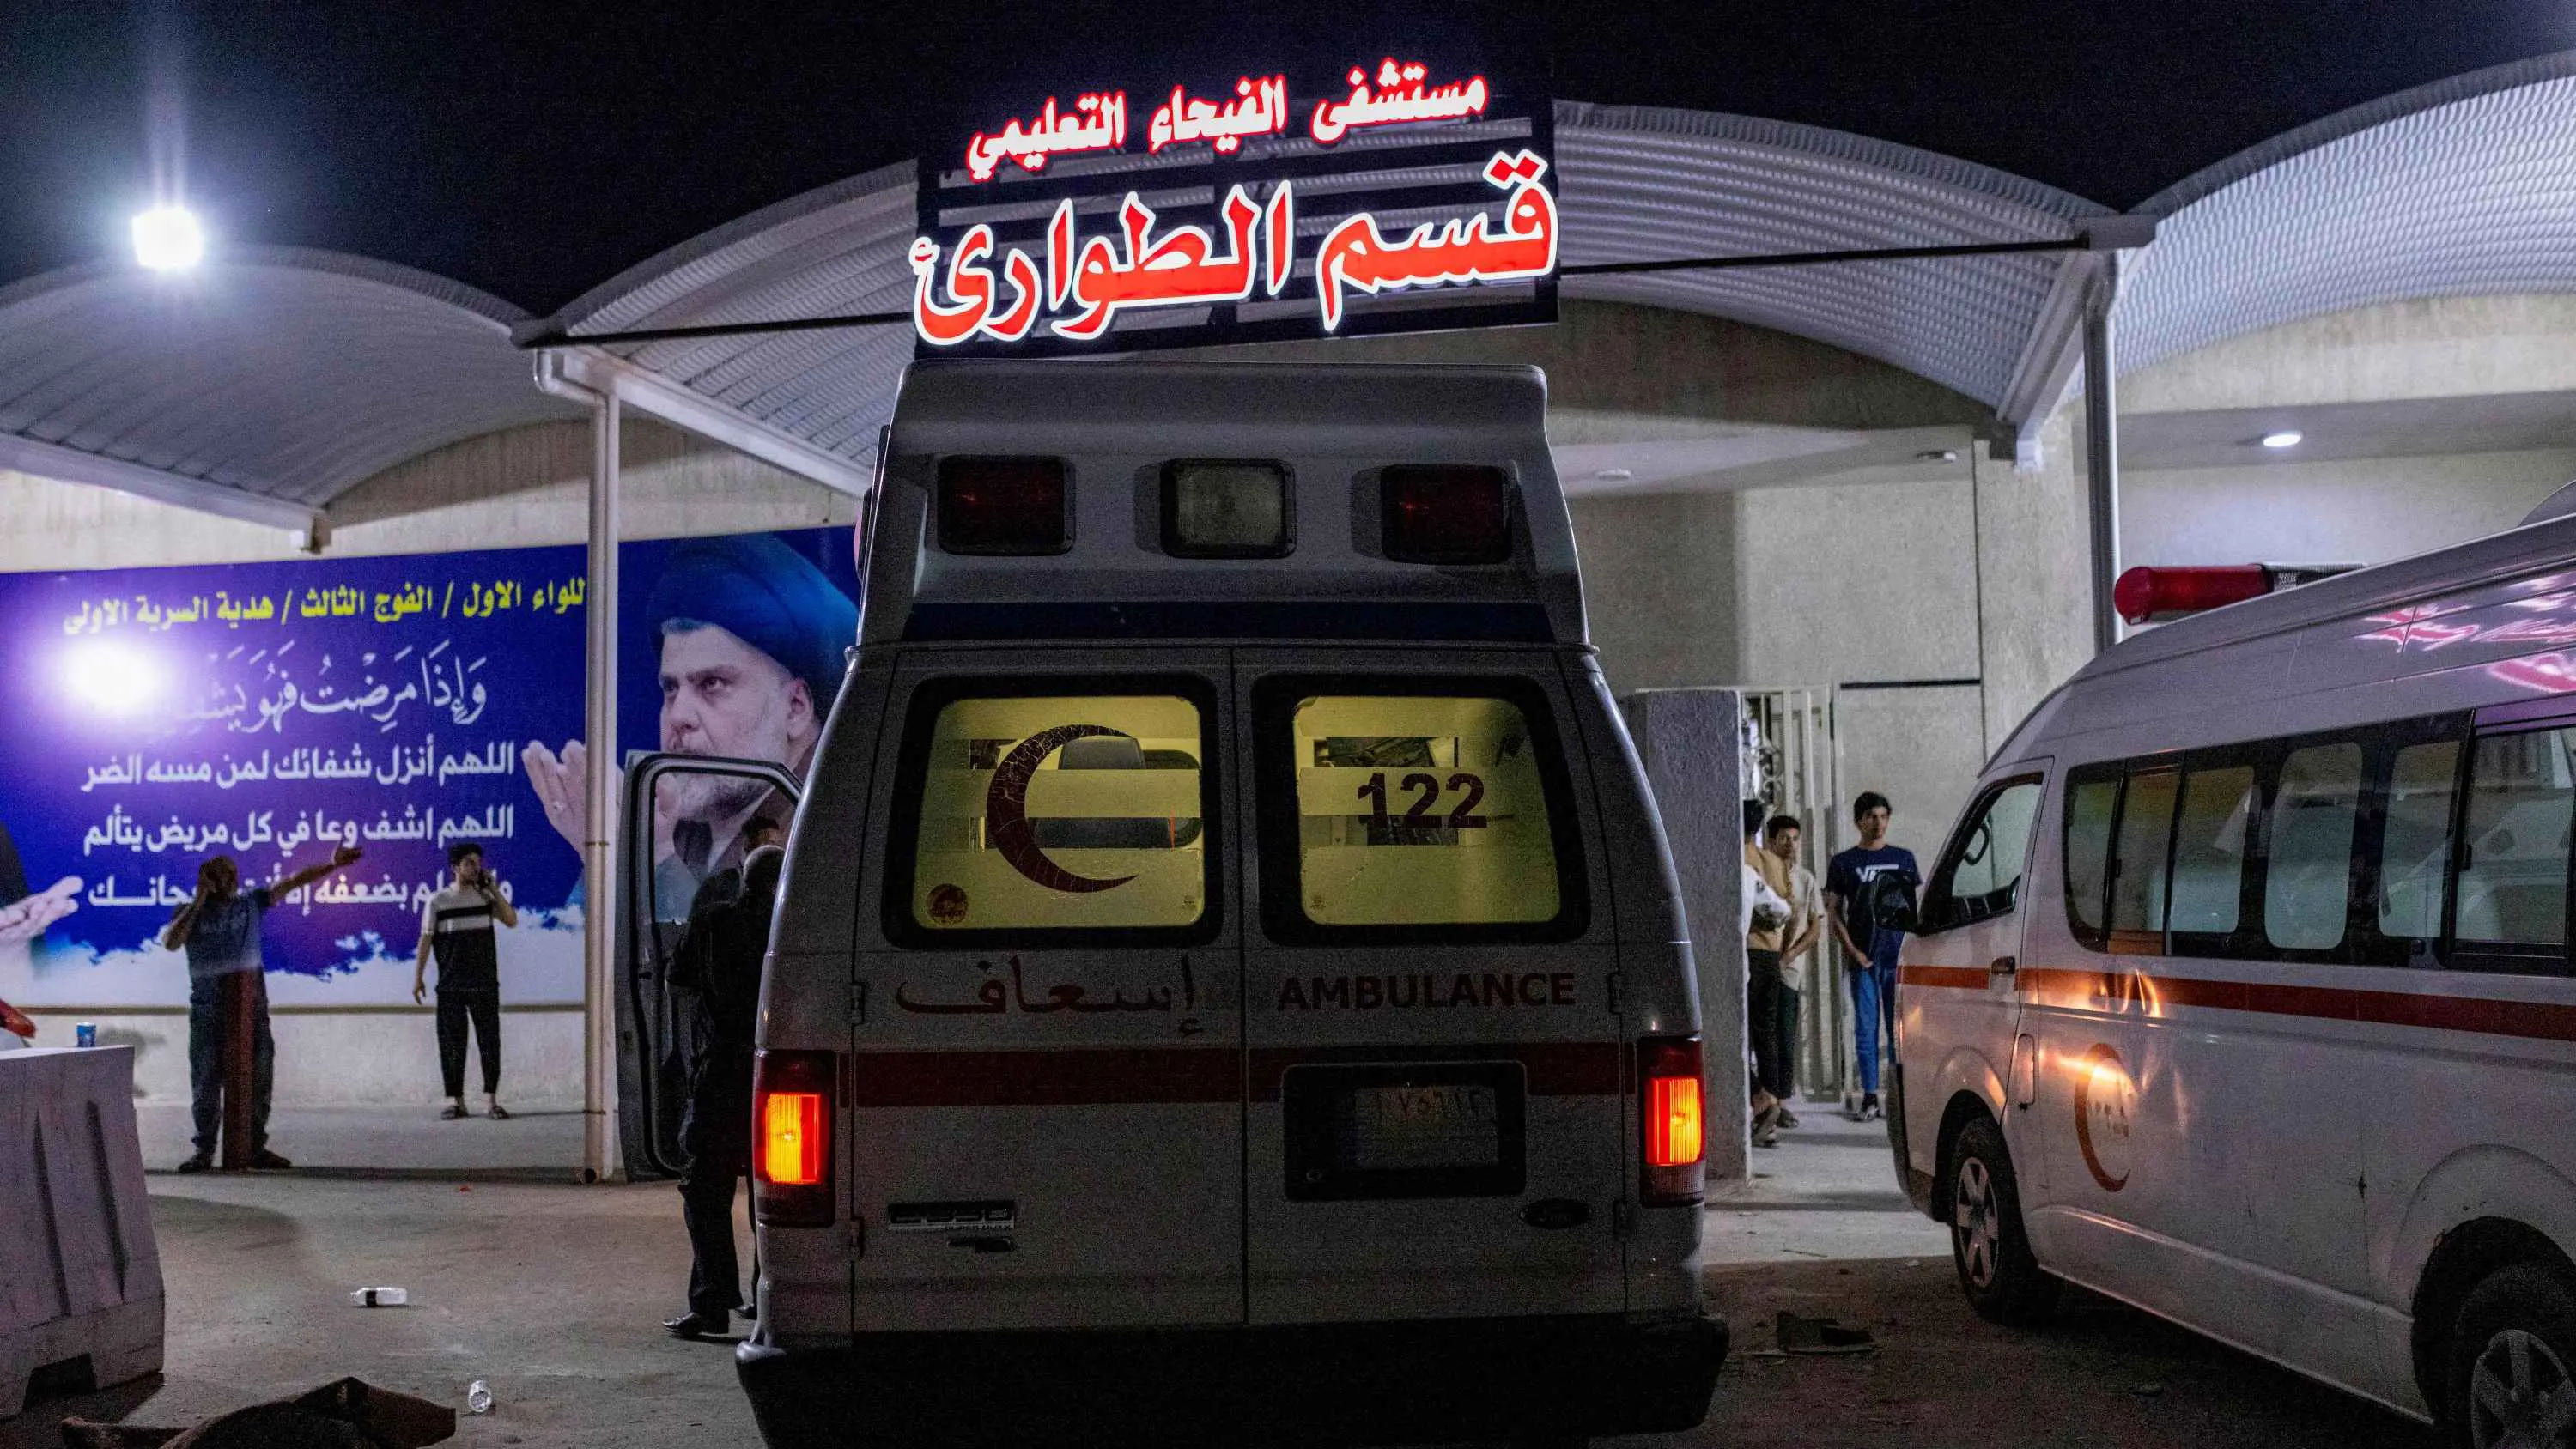 العراق.. خلاف بين شخصين في مستشفى يتحول إلى شجار عنيف (فيديو)